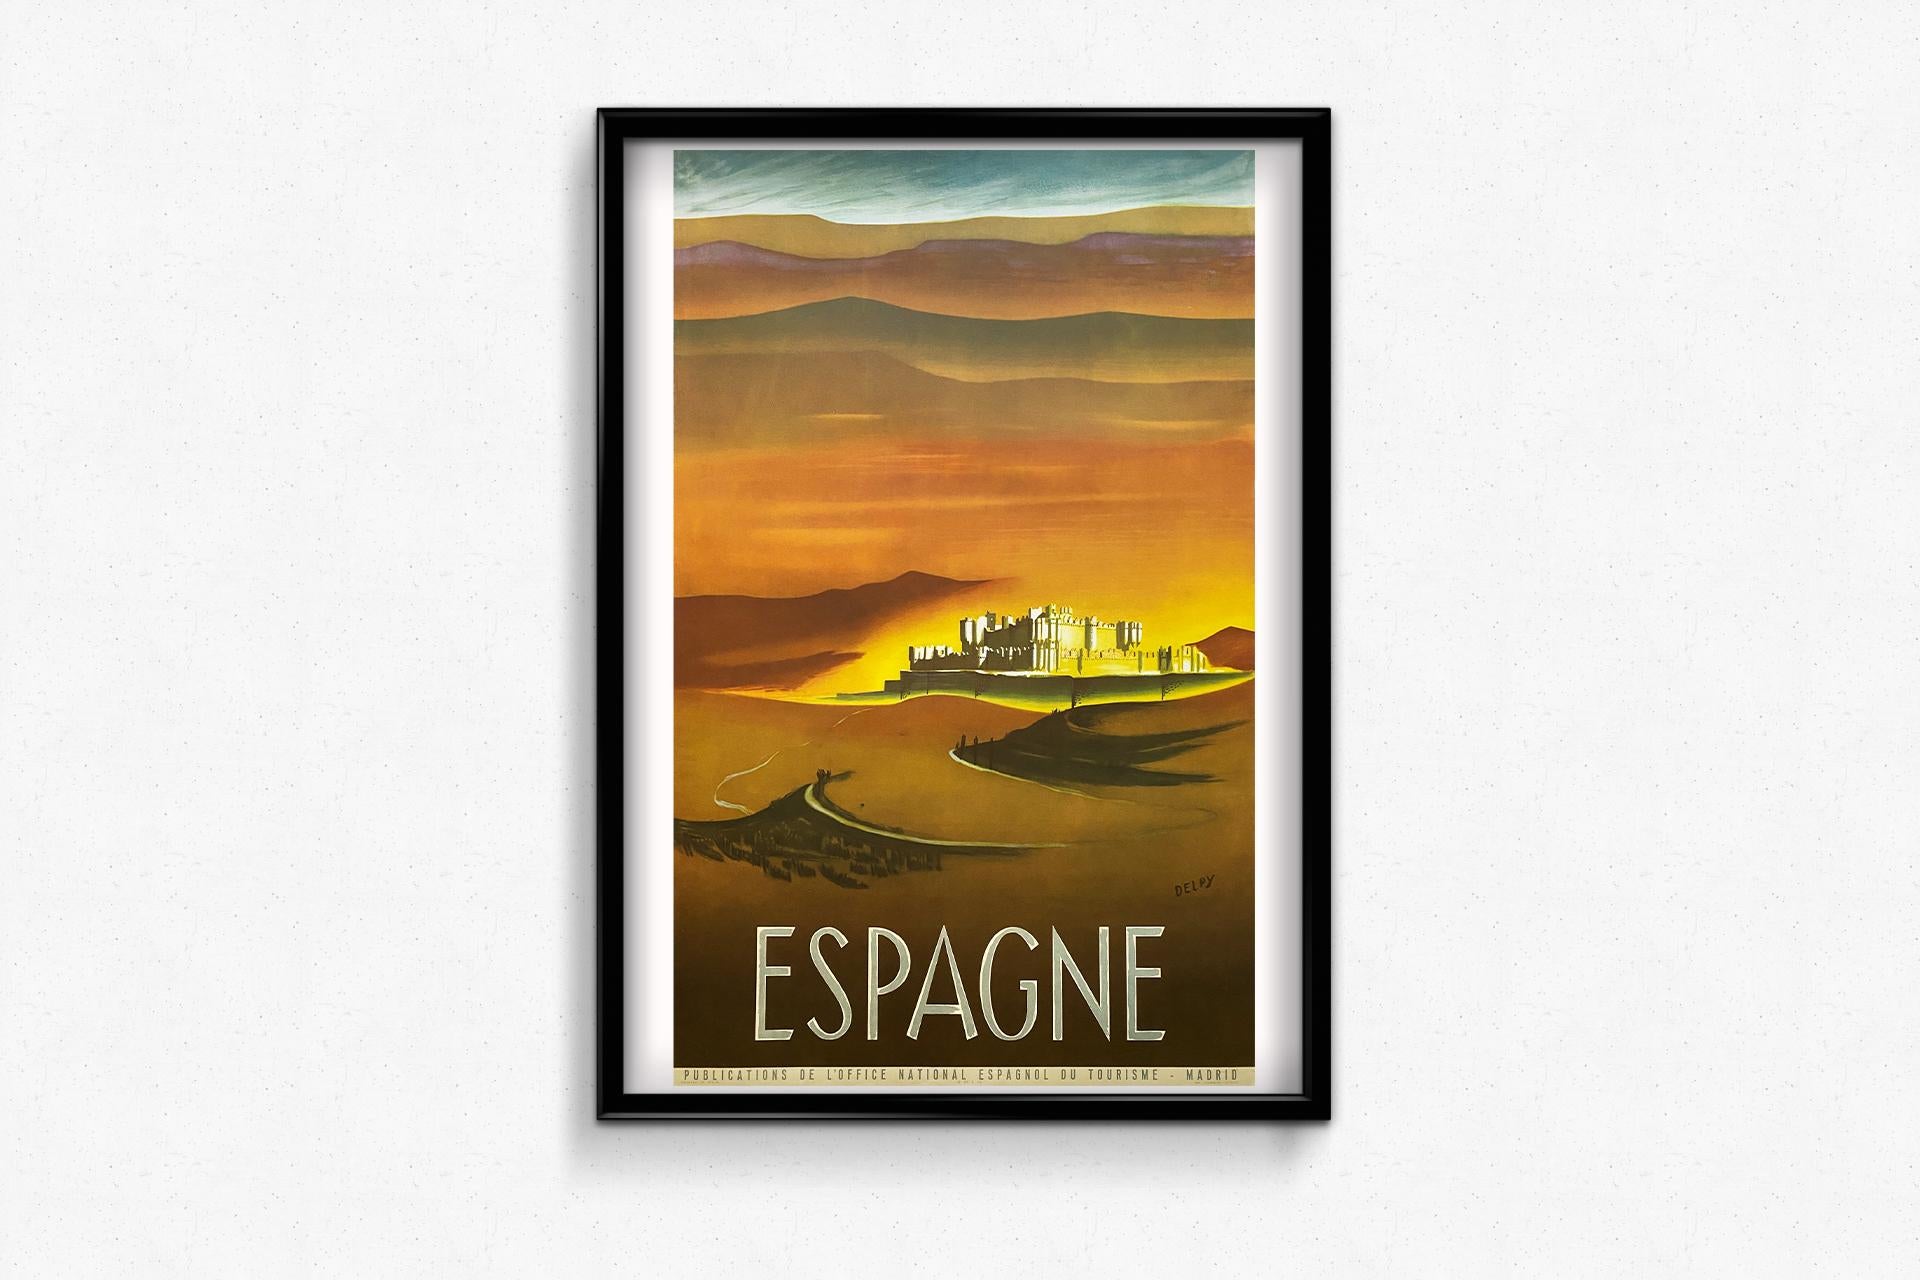 Originalplakat, das von Delpy um 1945 zur Förderung des Tourismus in Spanien geschaffen wurde.

Tourismus - Schloss - Spanien

Spanisches Nationales Fremdenverkehrsamt

Gedruckt bei Fournier in Vitoria